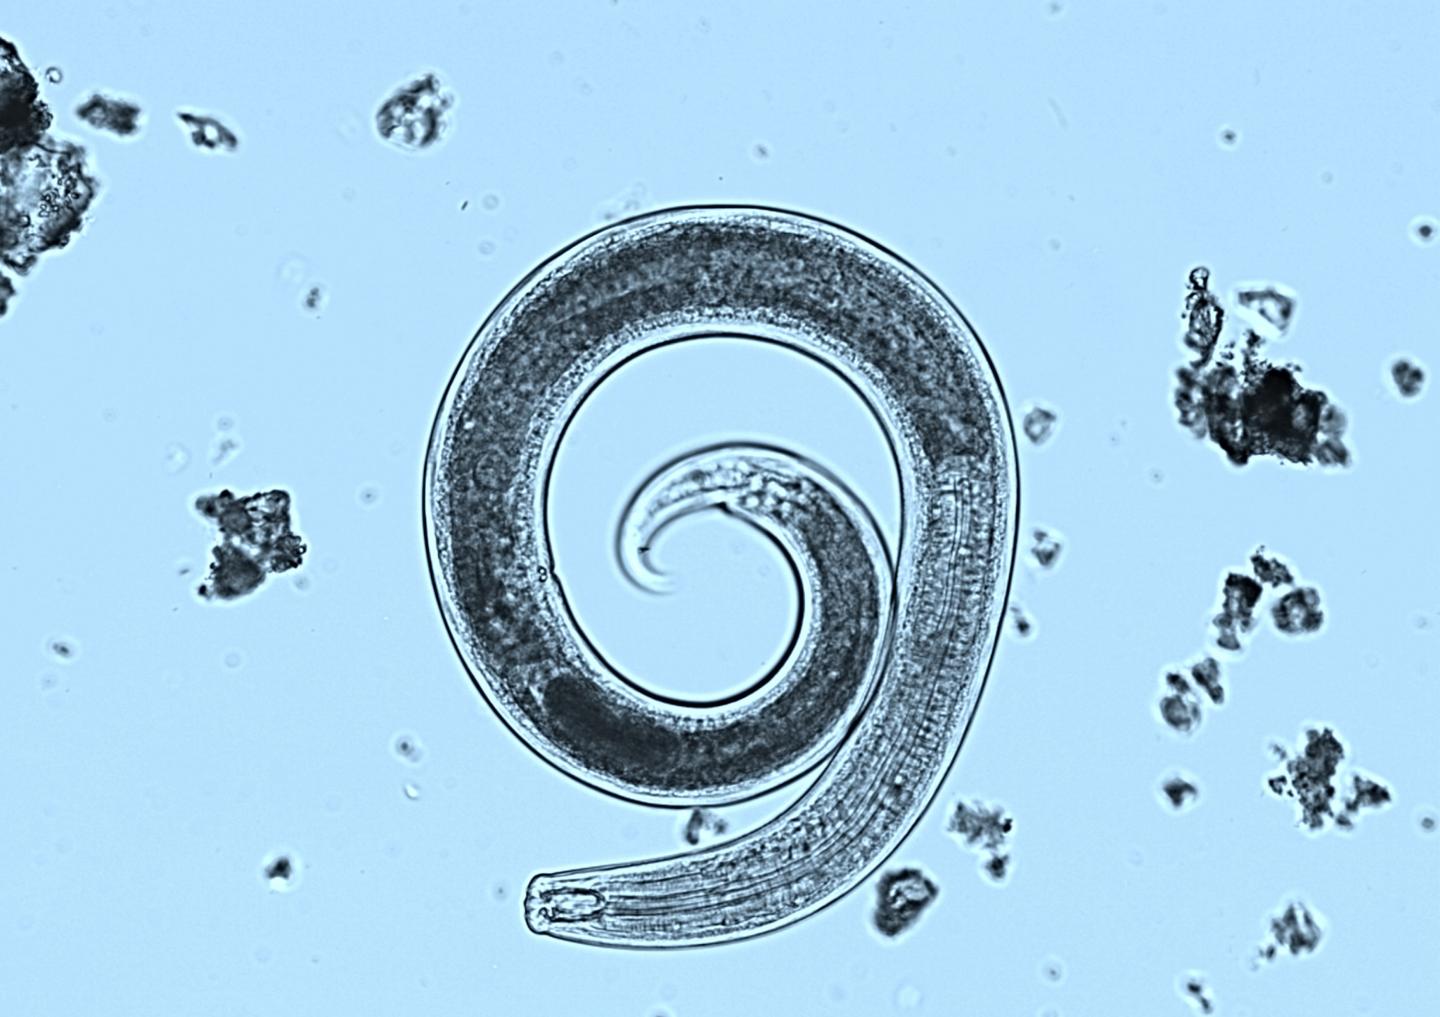 Nematode under Microscope